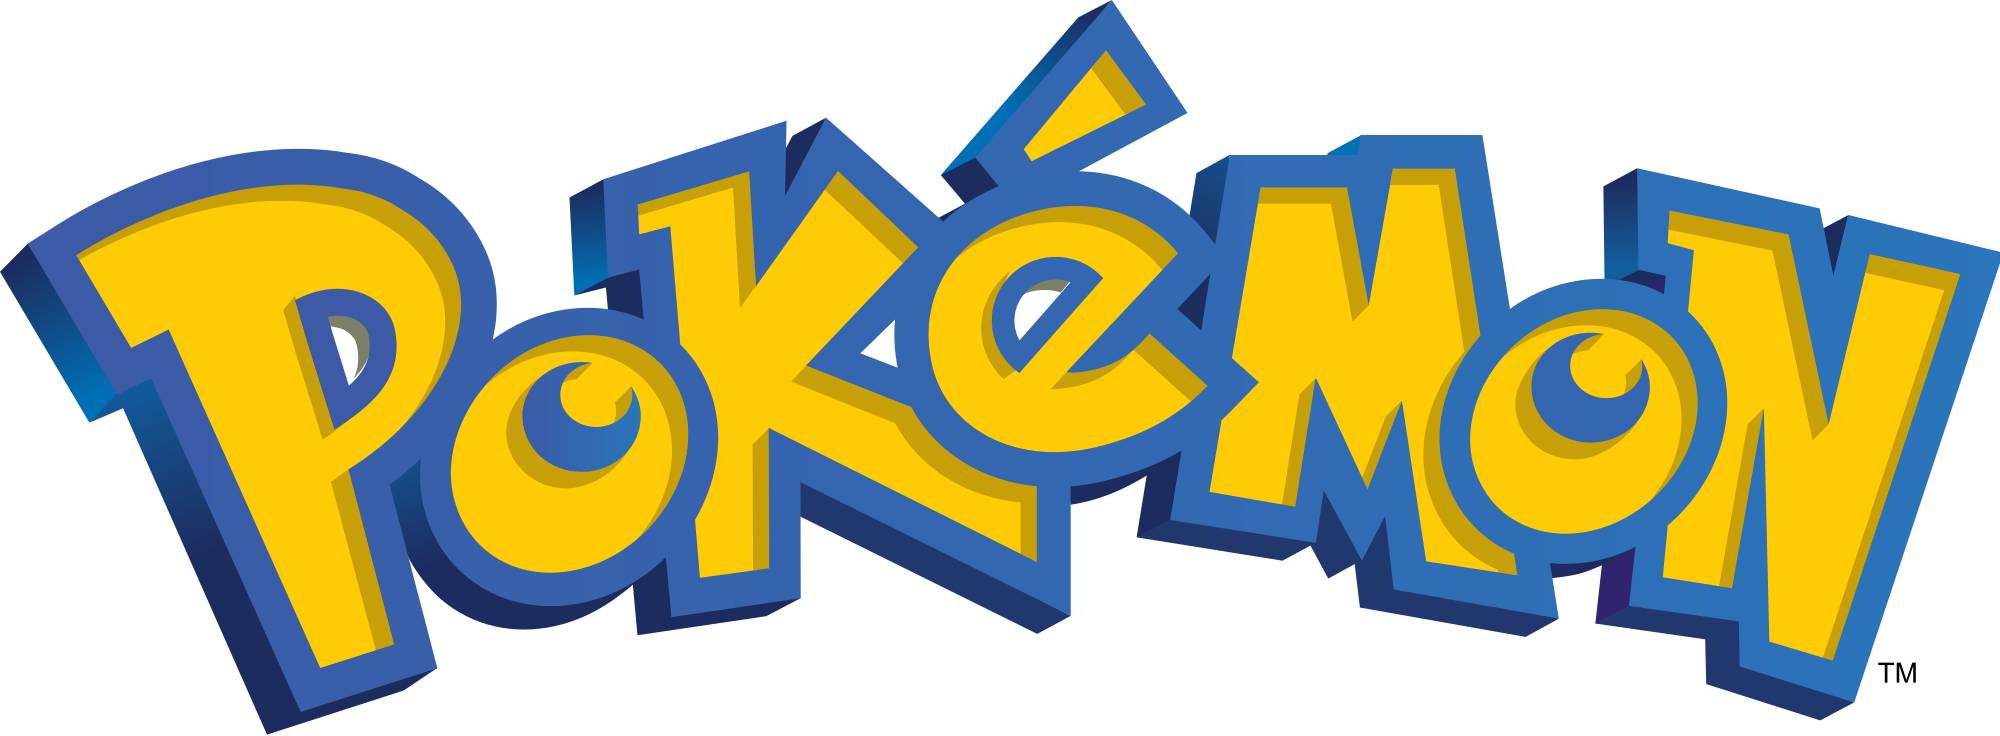 pokémon 官方 logo   这次我们要介绍的就是精灵宝可梦系列的创办